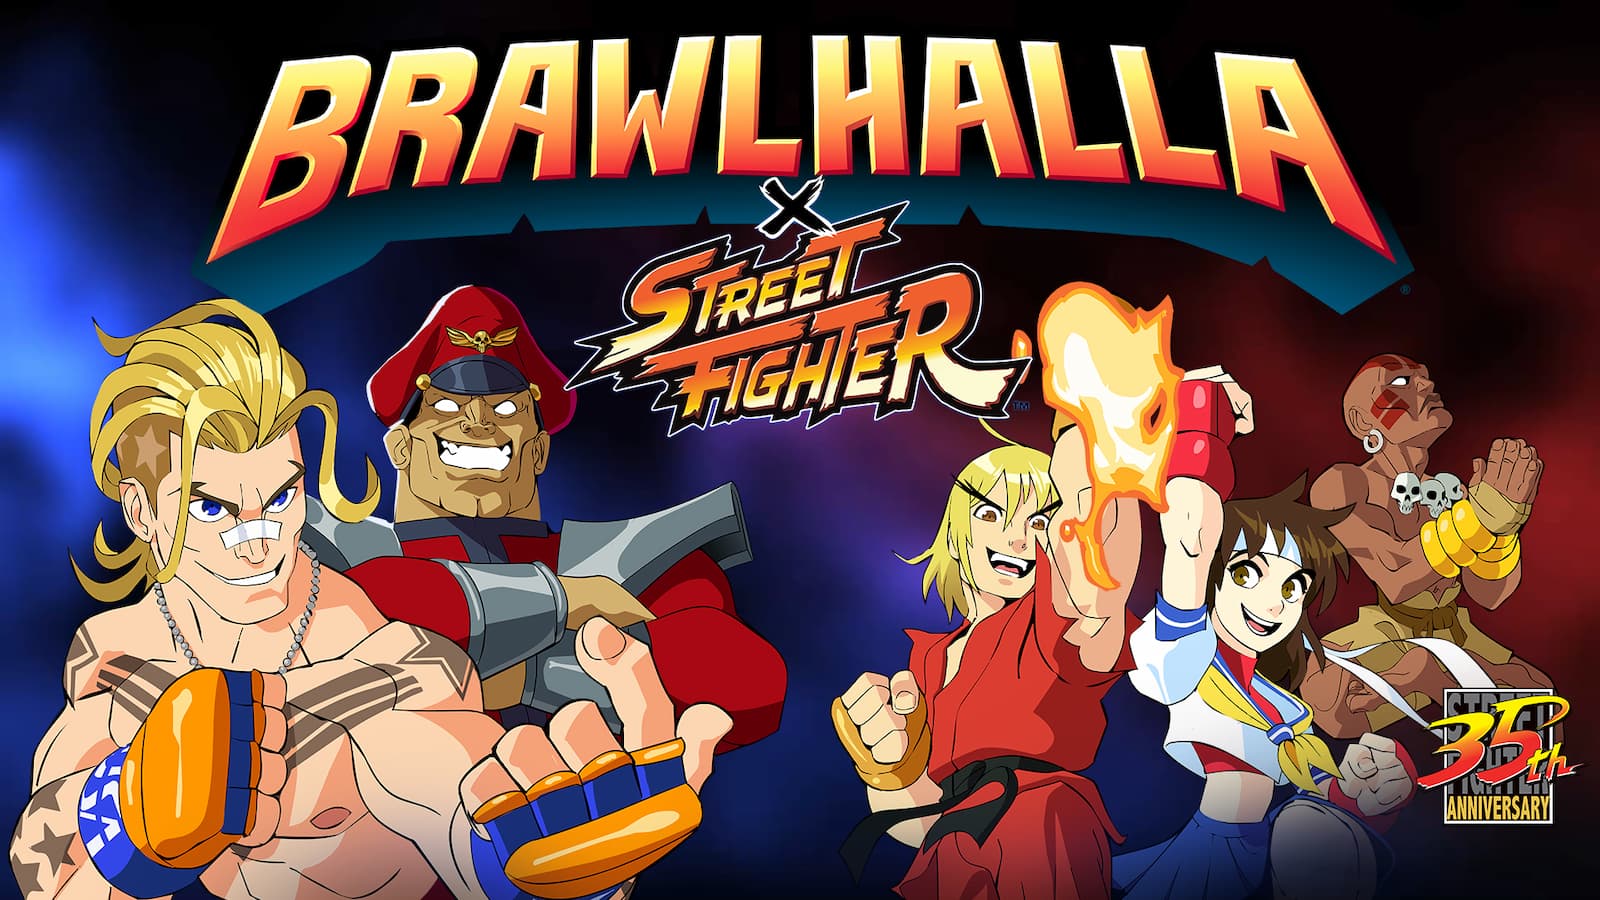 Street Fighter Brawhalla